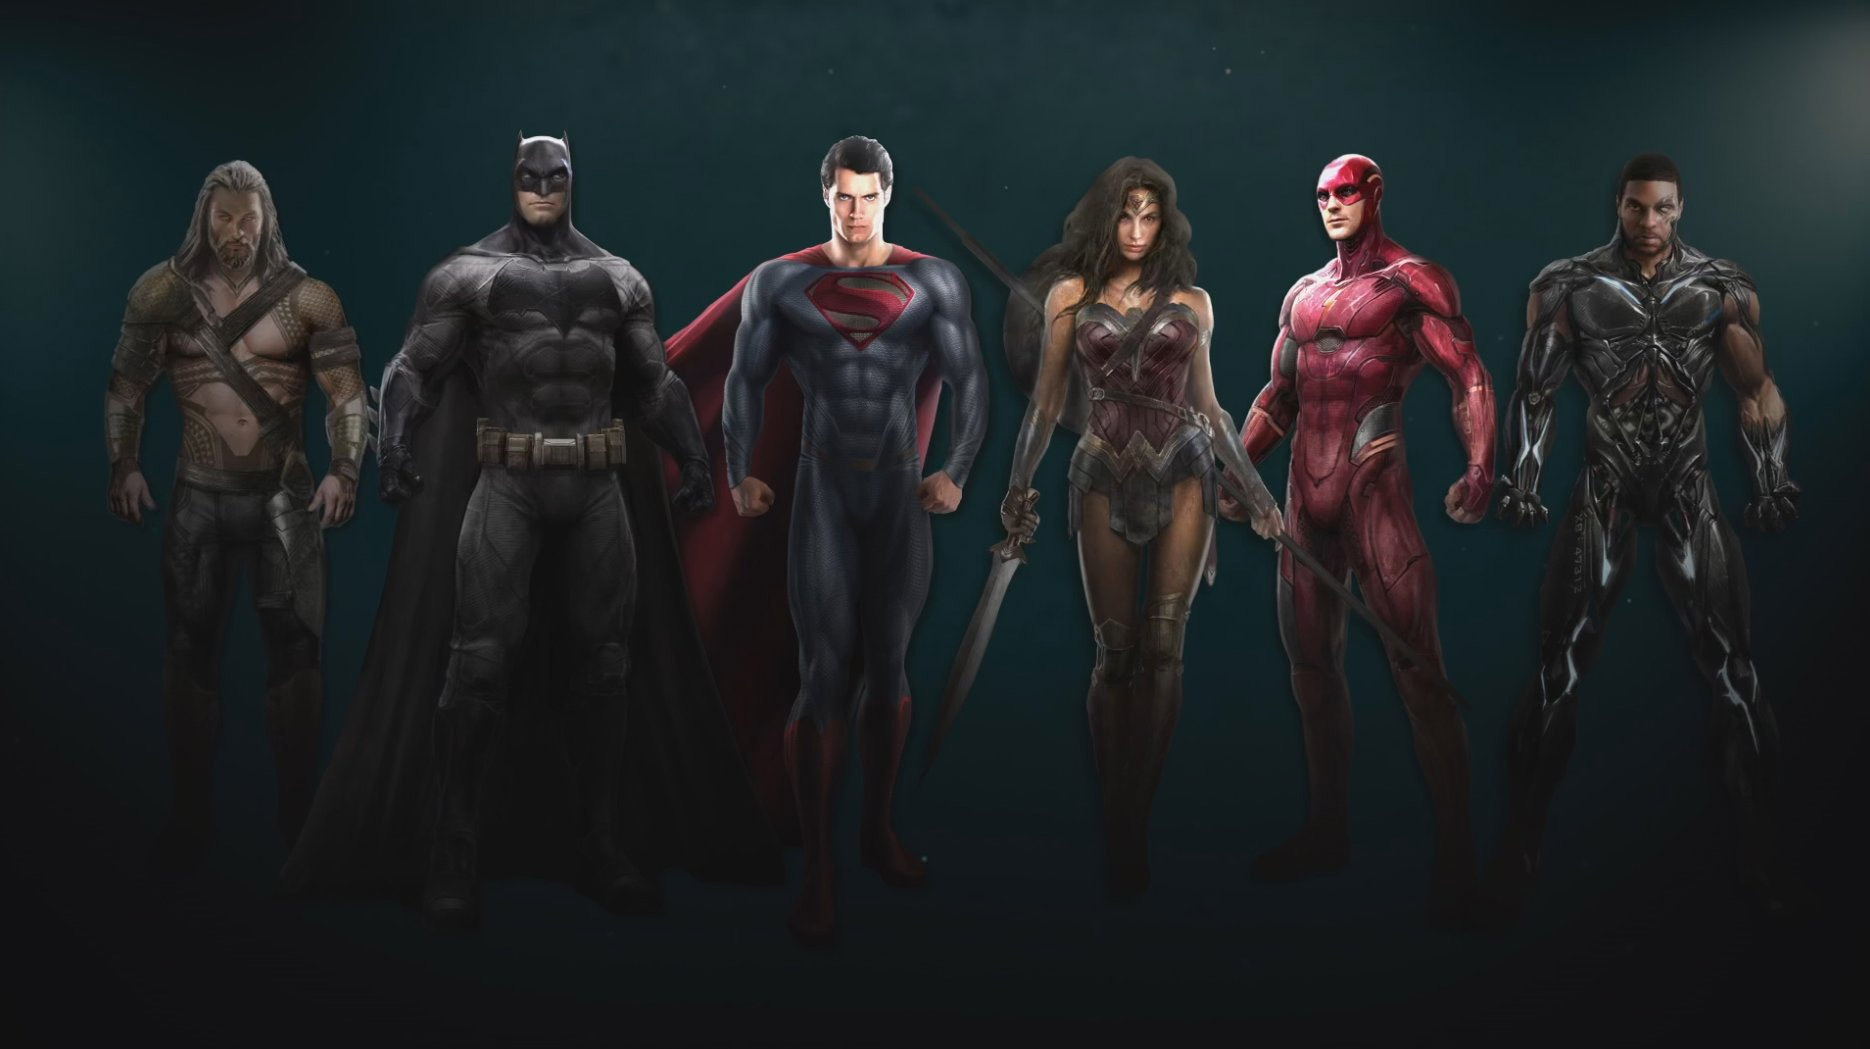 Ojito a este concept art de Justice League porque está el supergrupo al completo